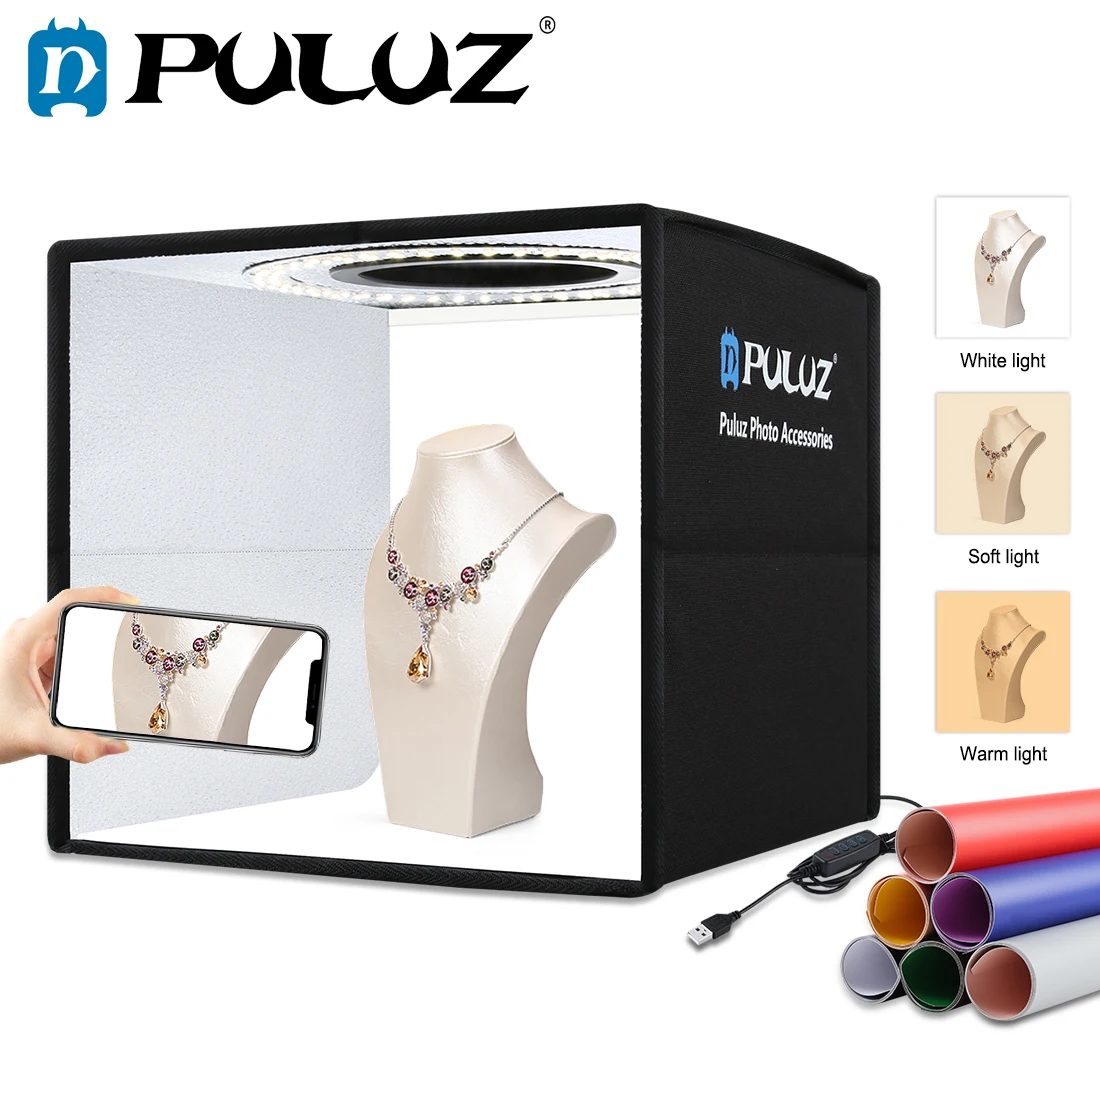 

Софтбокс PULUZ с 3 режимами освесветильник, световой бокс с регулируемой яркостью, световое кольцо, светильник вой бокс для фотостудии, палатк...